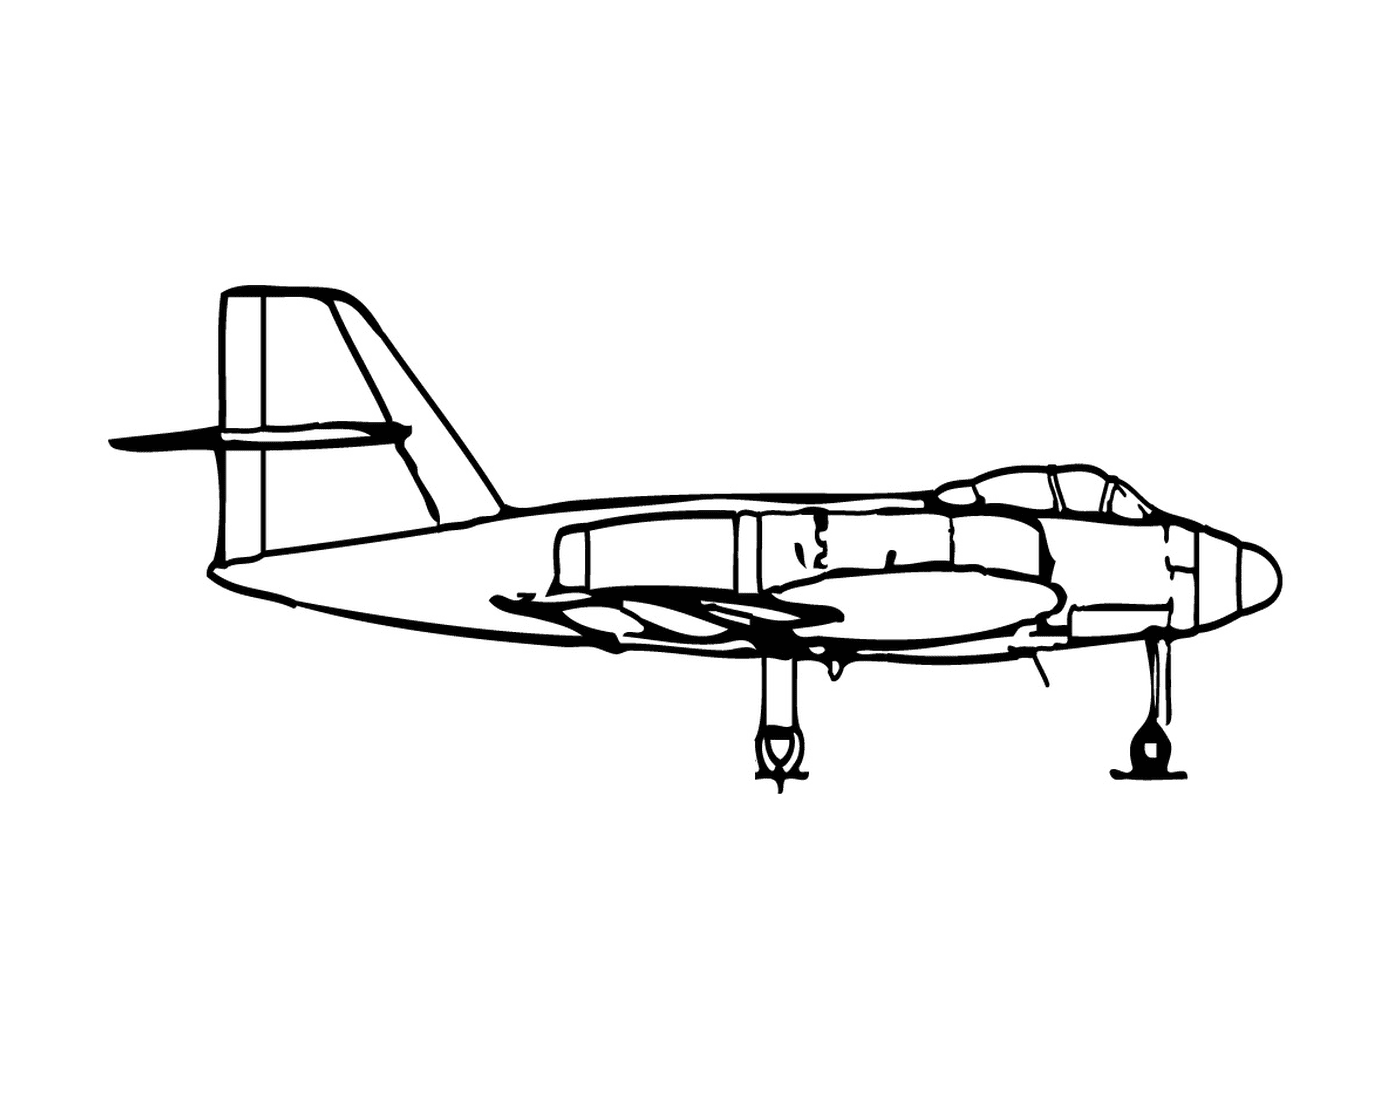   Un avion de chasse 